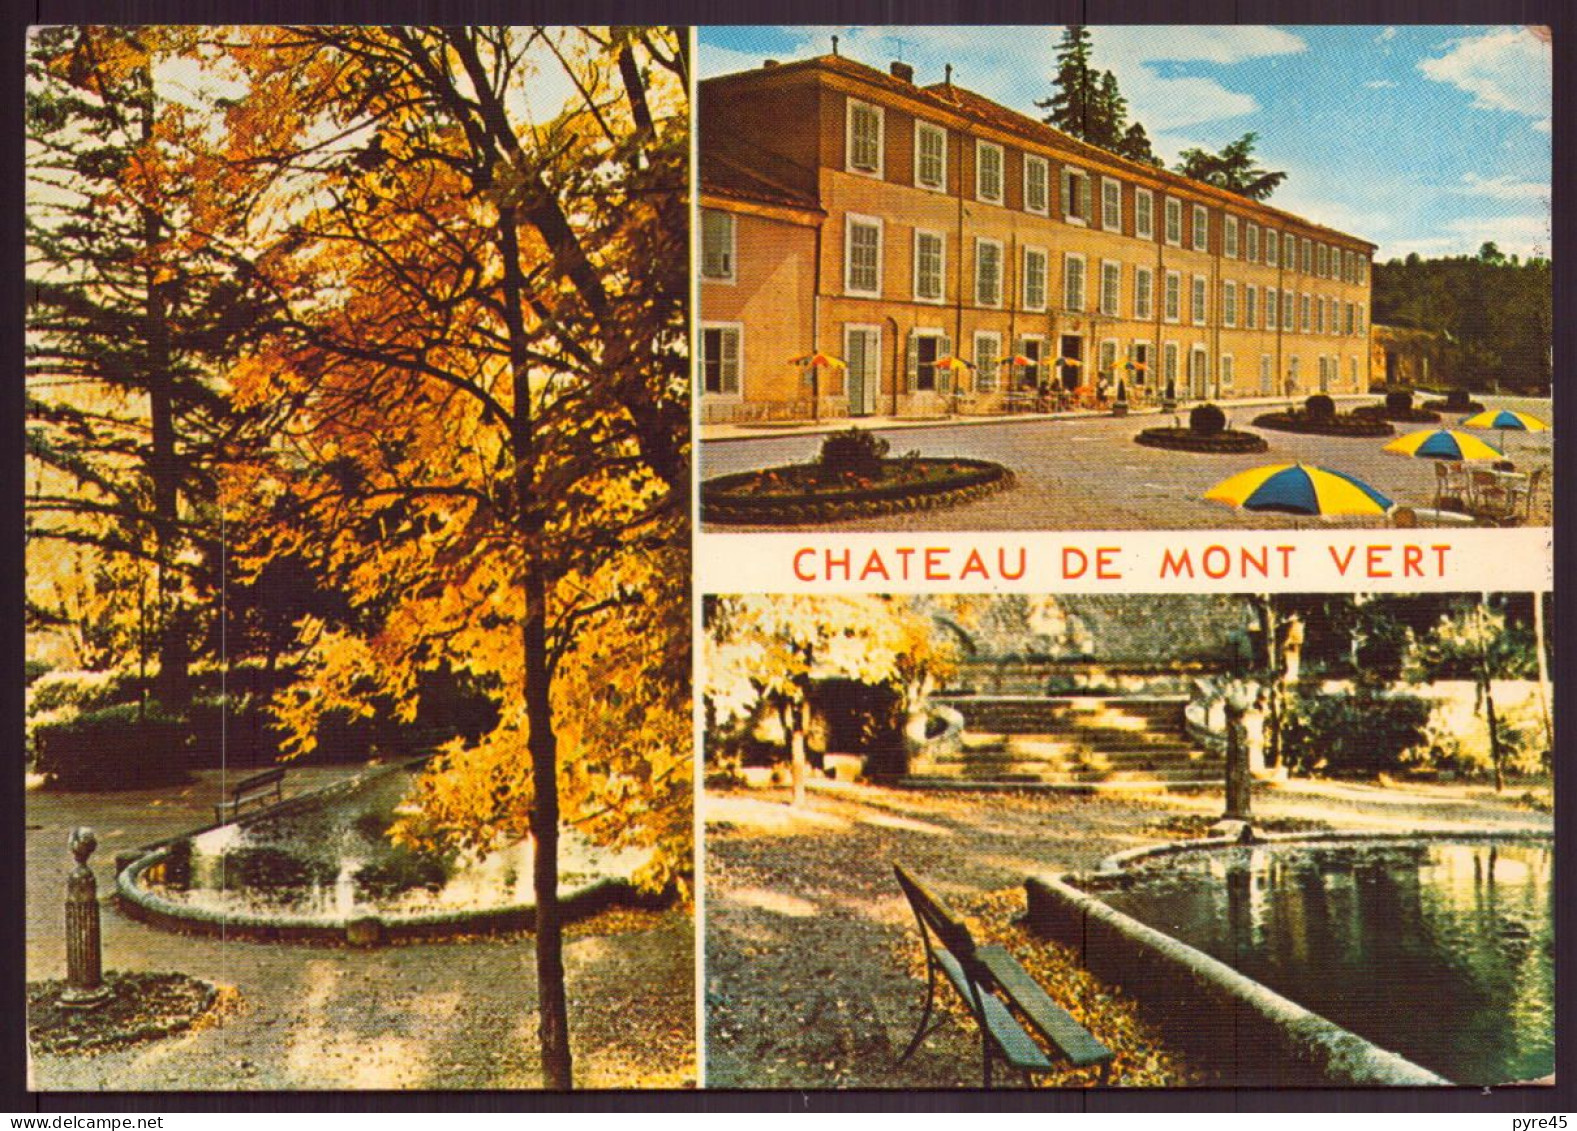 SAINT ZACHARIE CHATEAU DE MONT VERT 83 - Saint-Zacharie